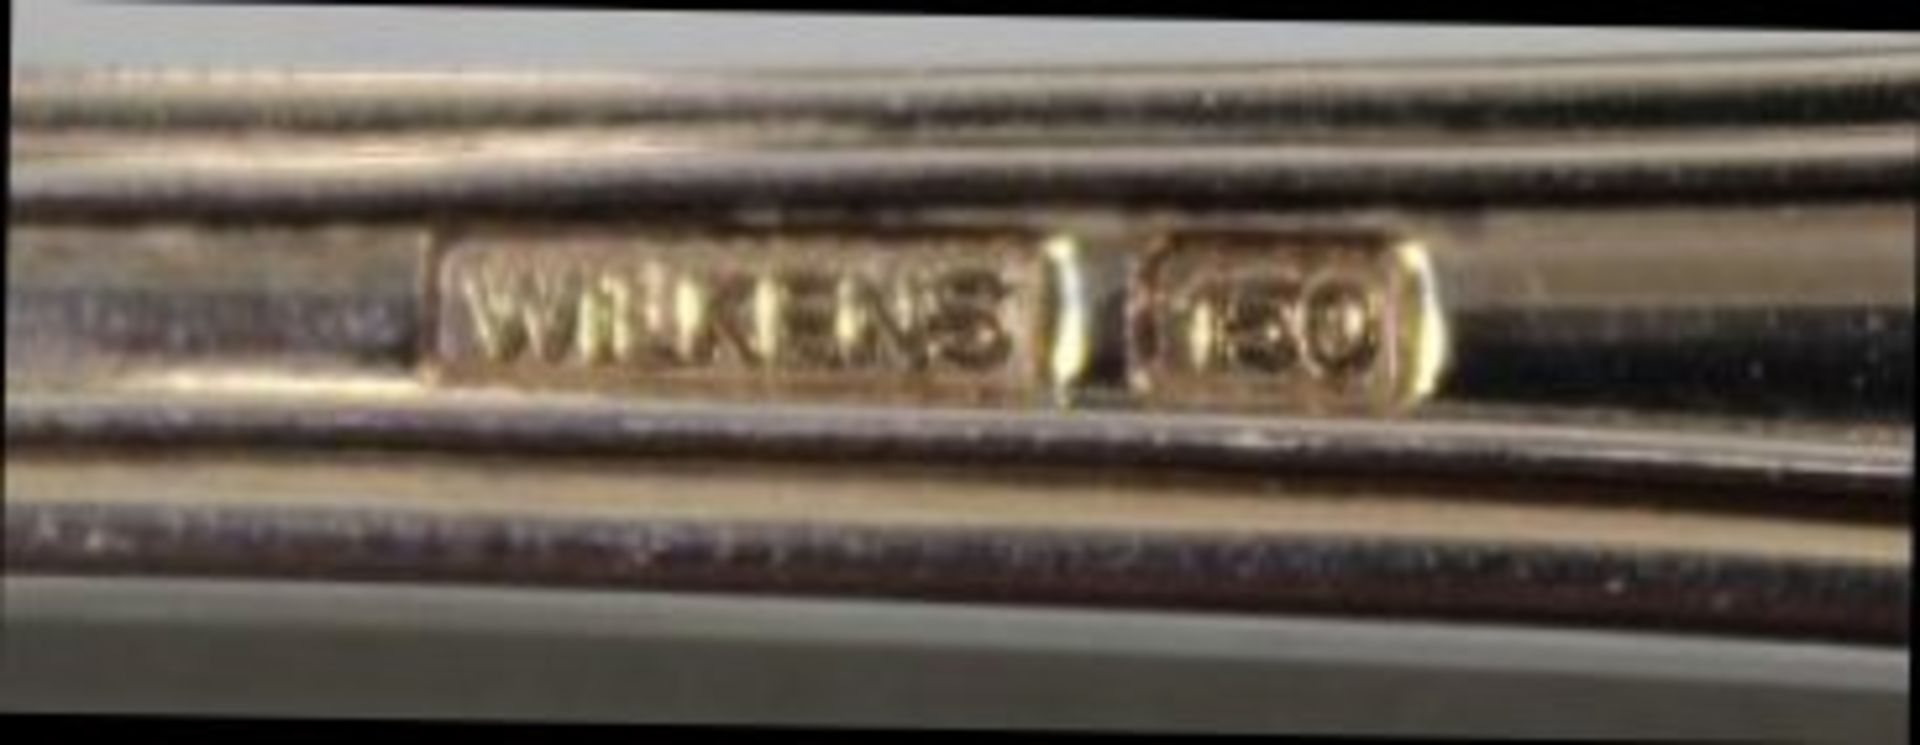 Besteck "Wilkens", 150er Auflage, 4x Beilagenlöffel, 2x Saucenkellen, 18x Messer, 18x gr. Gabeln, - Bild 2 aus 2